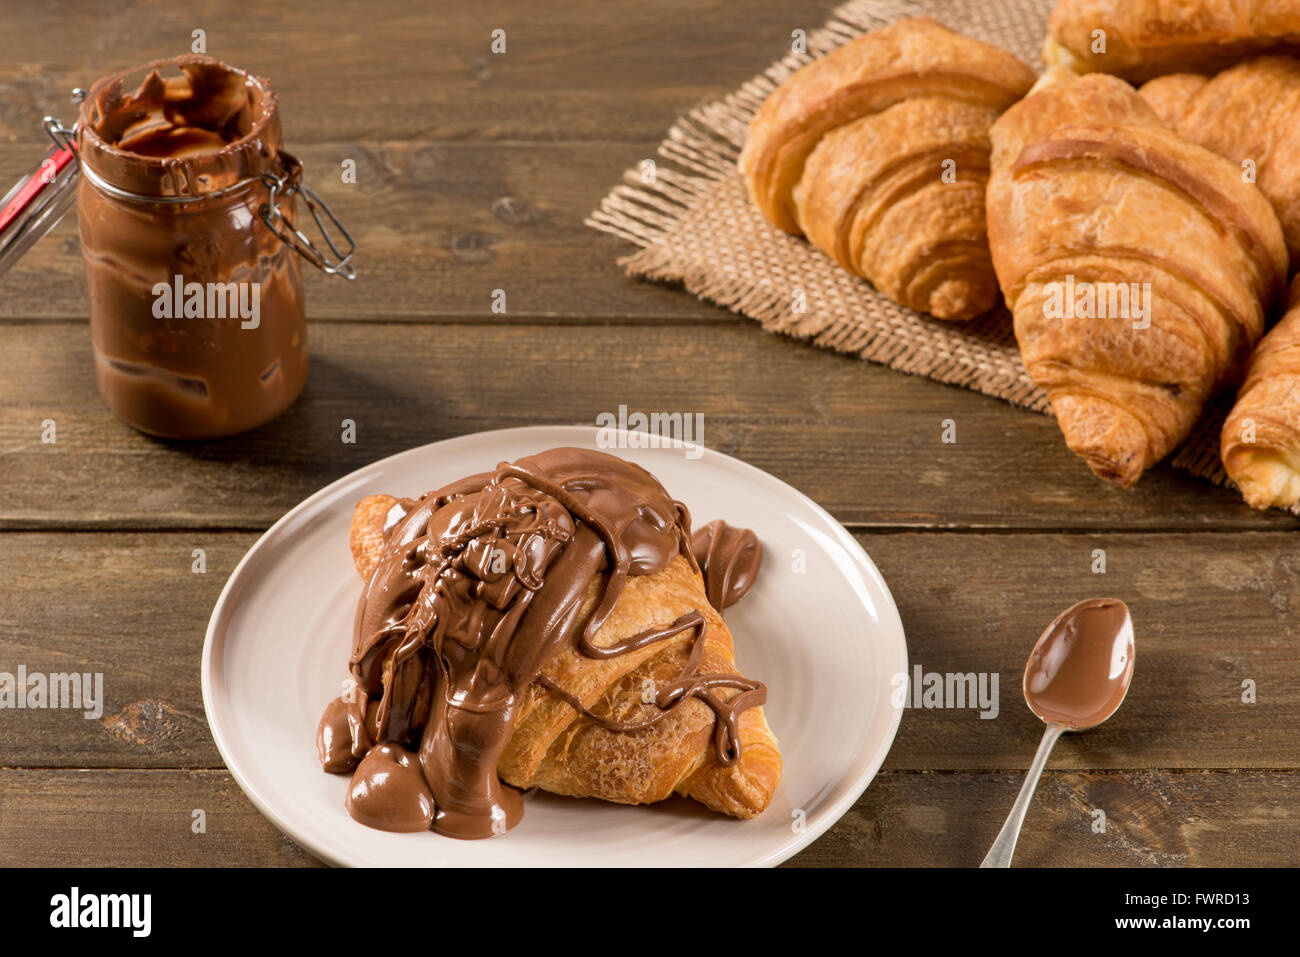 La prima colazione con croissant al cioccolato su un sfondo rustico Foto Stock